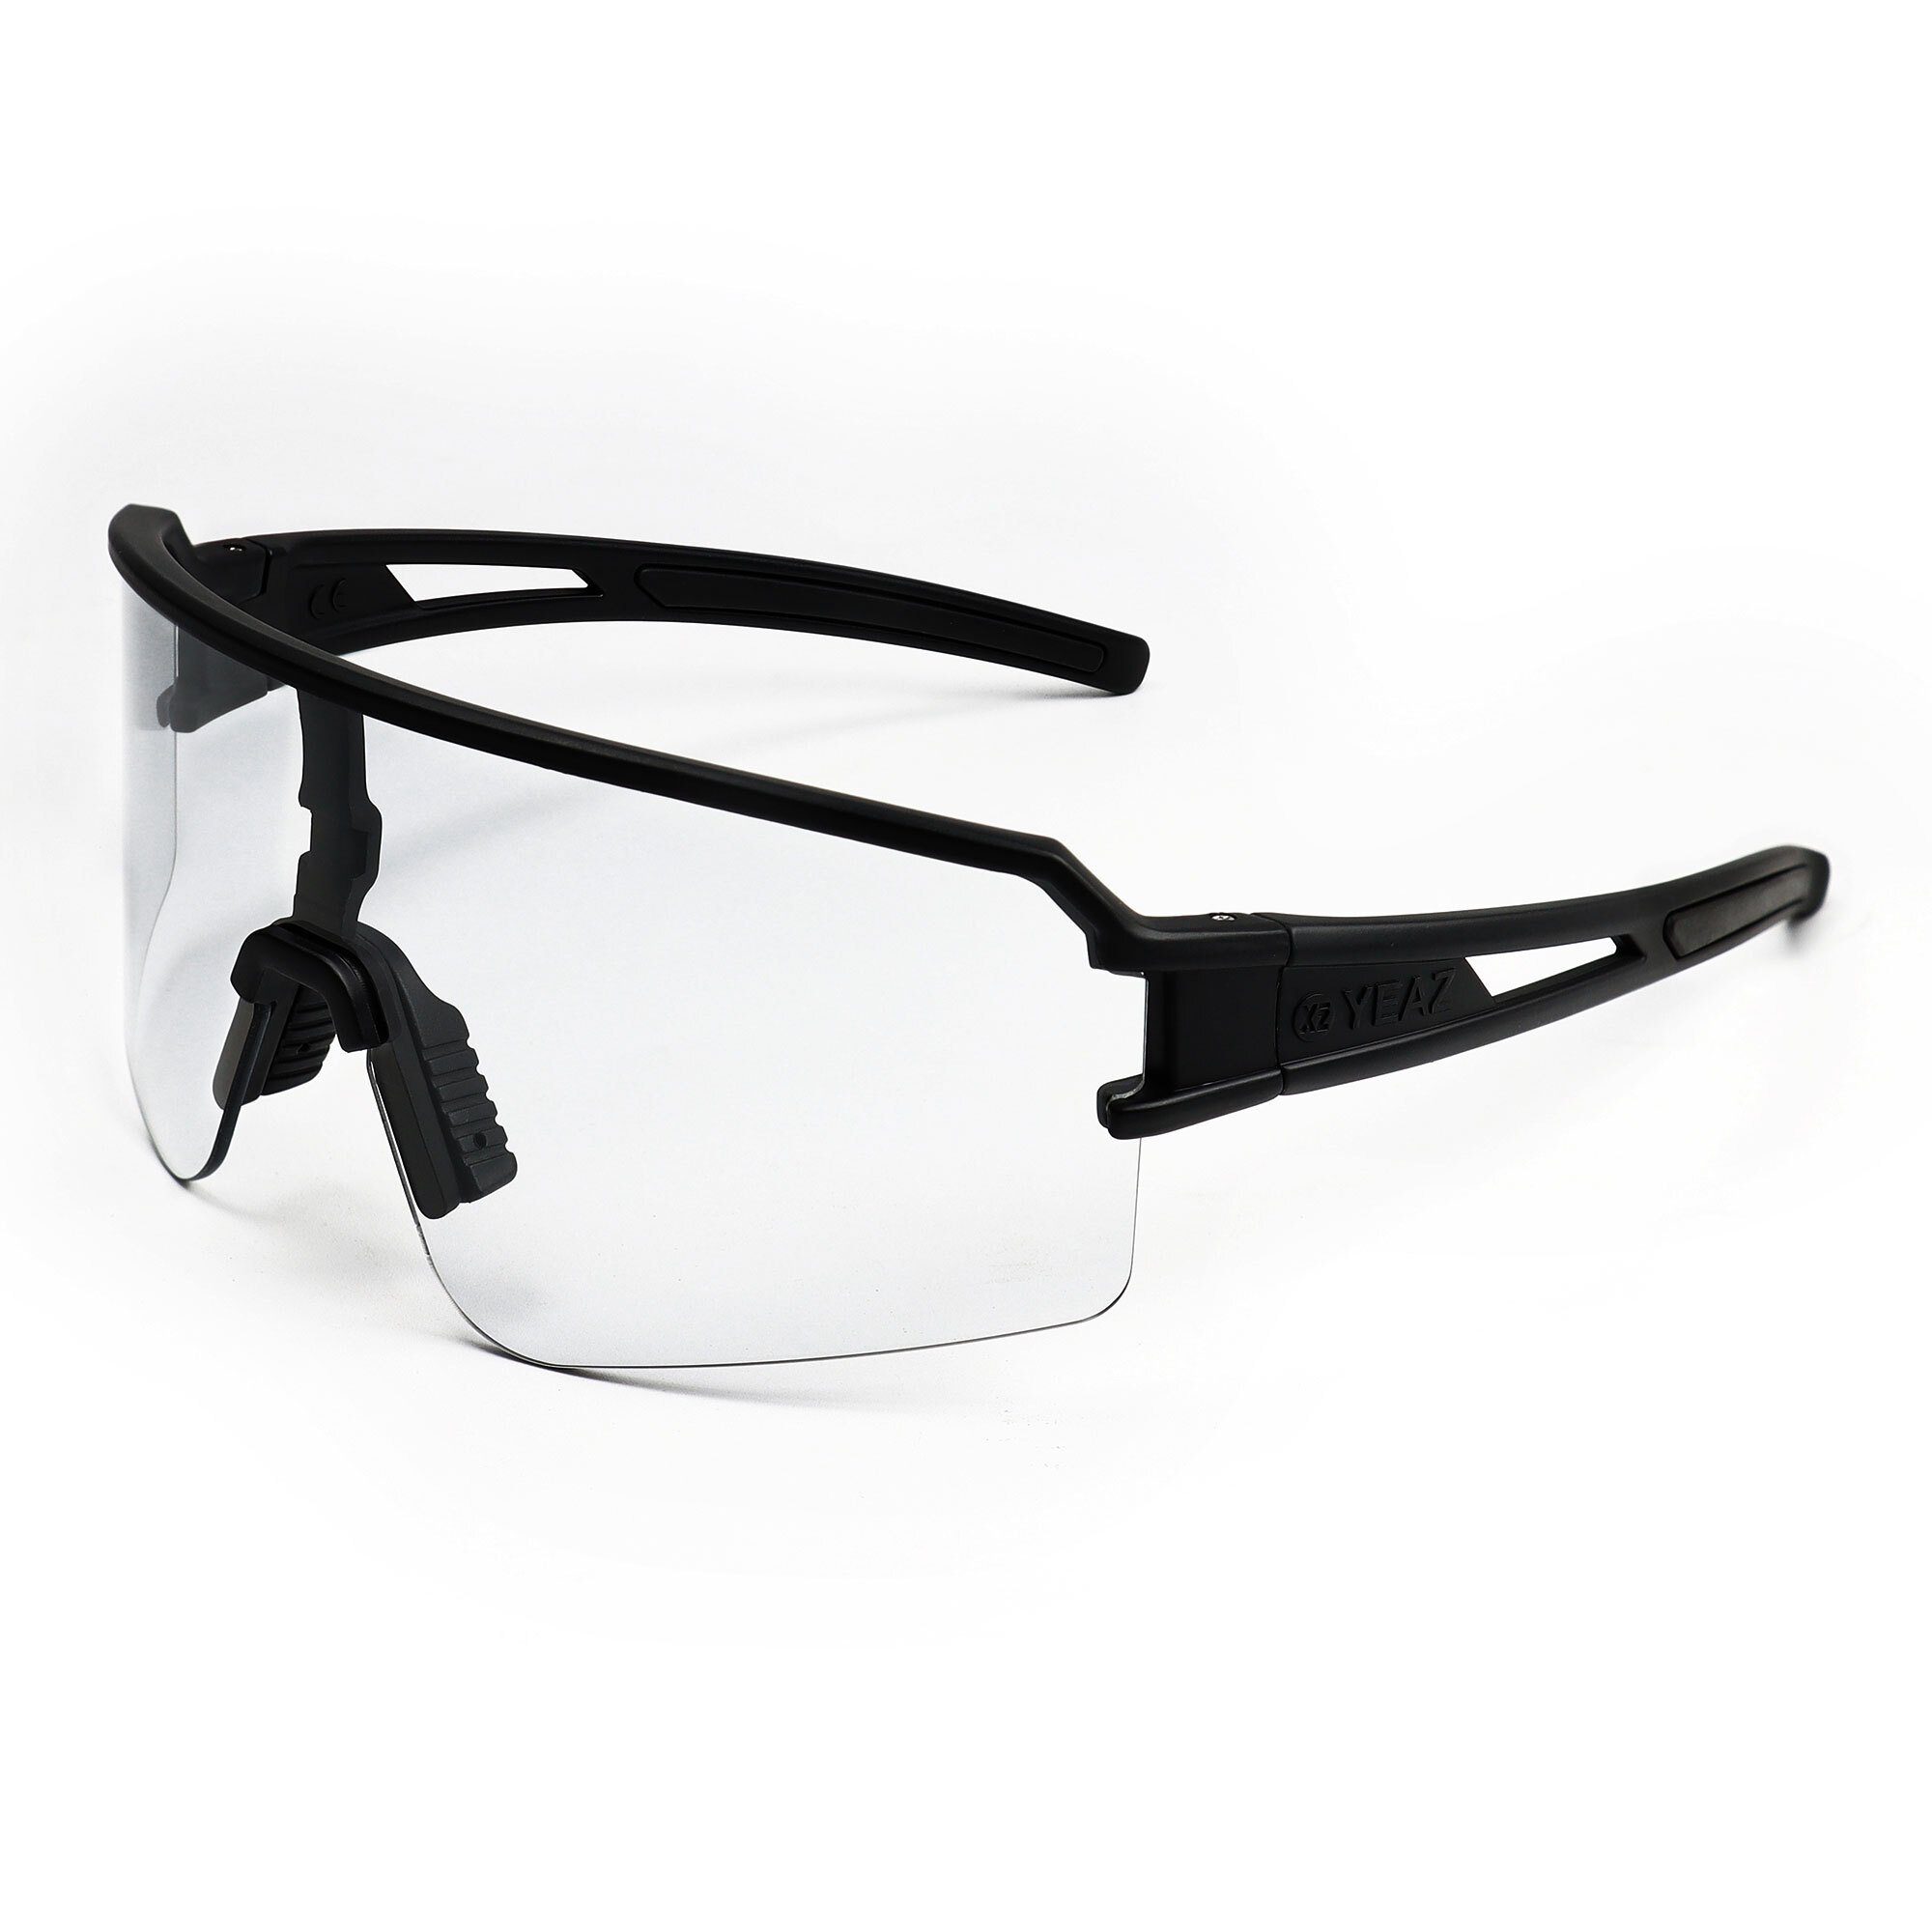 Sport-Sonnenbrille weiß/transparent, Sportbrille schwarz SUNSPOT sport-sonnenbrille YEAZ / transparent